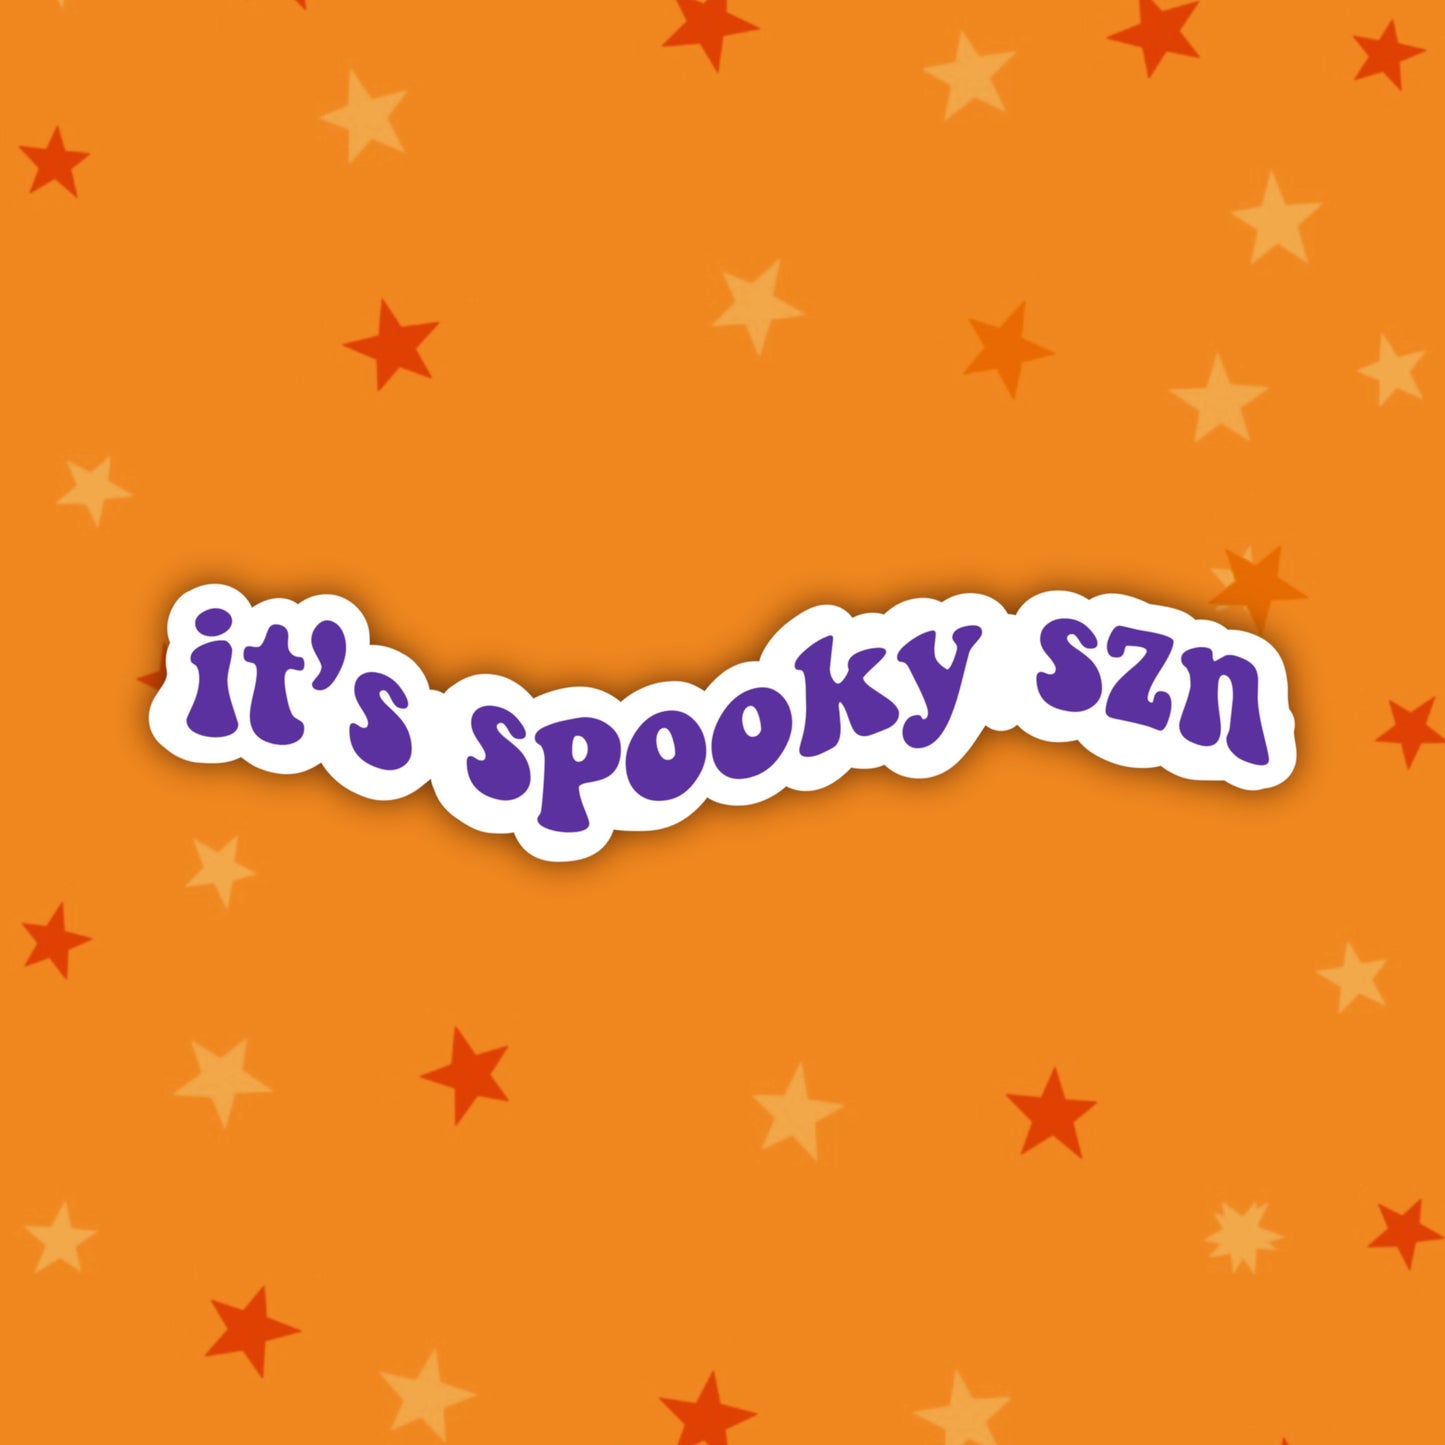 It's Spooky Szn | Halloween